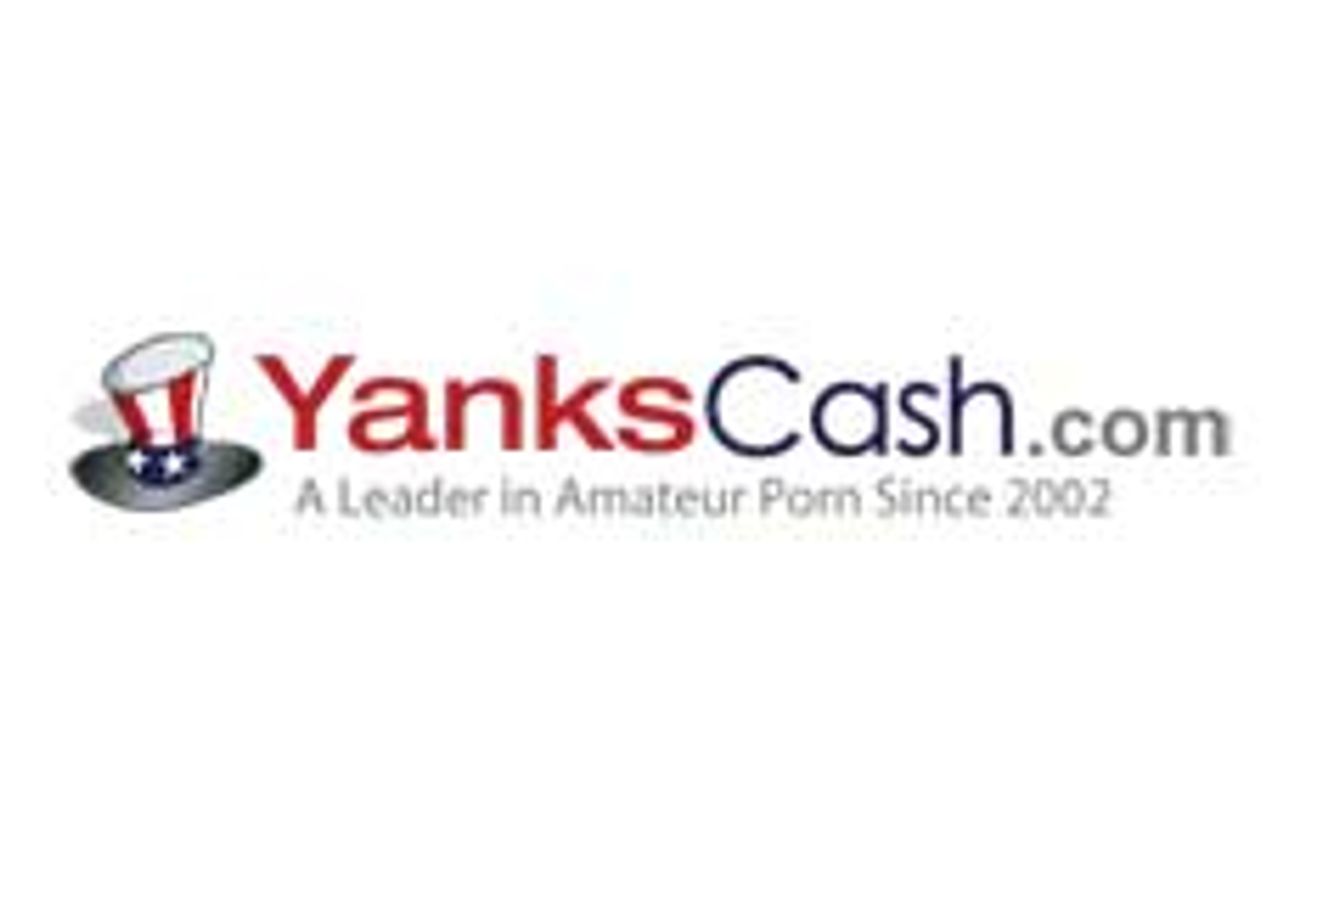 Yankscash.com